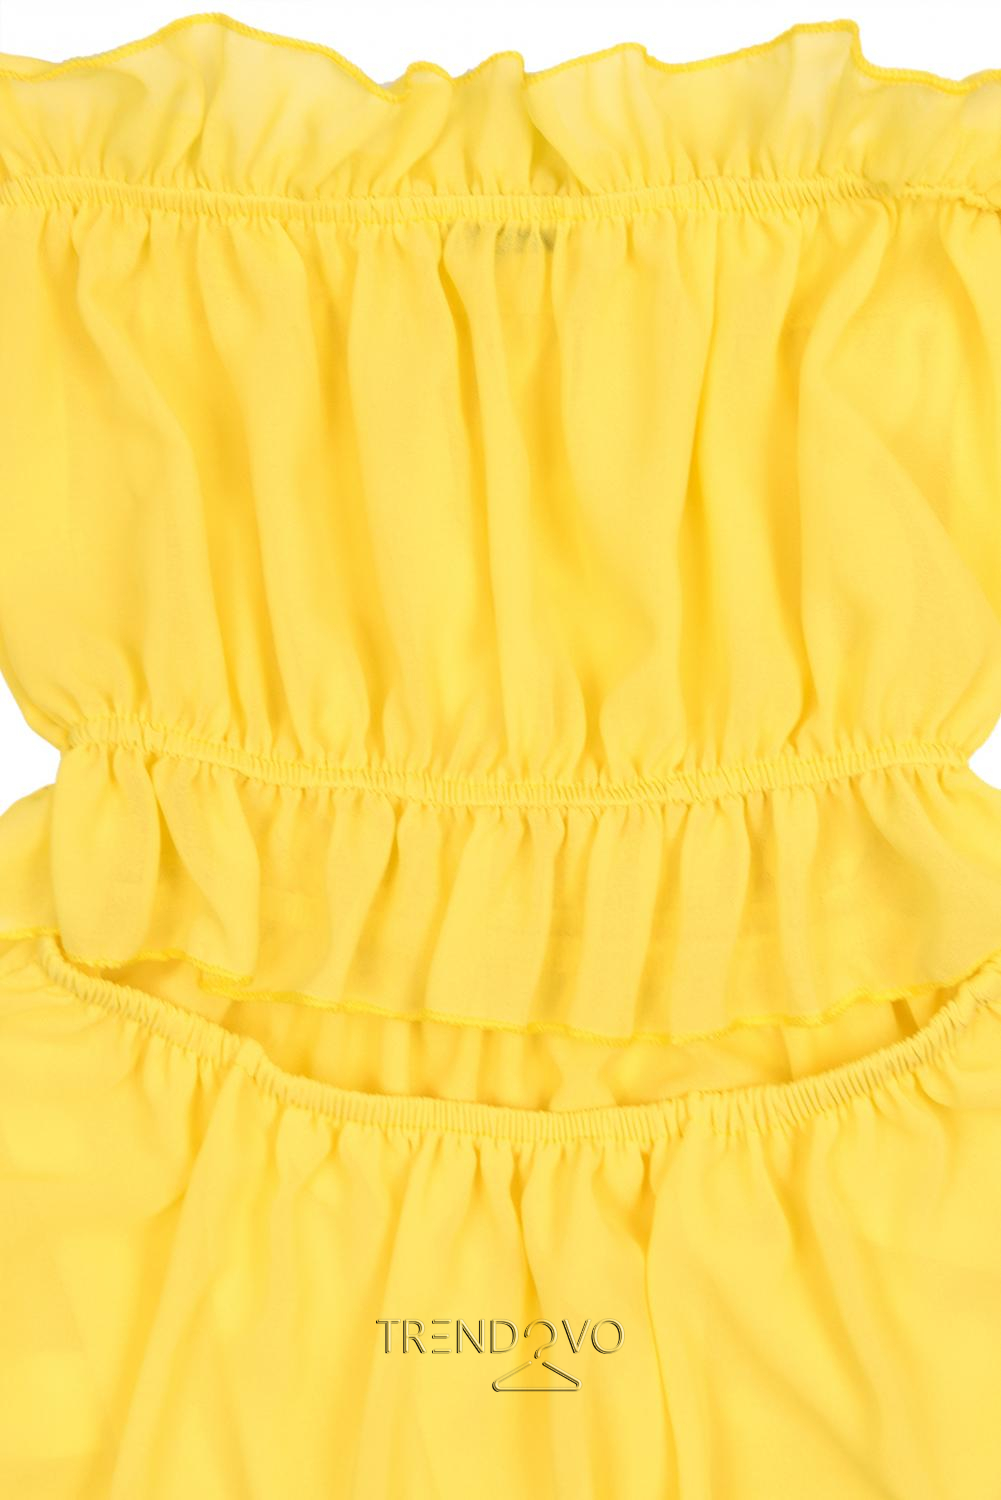 Žluté letní dlouhé šaty